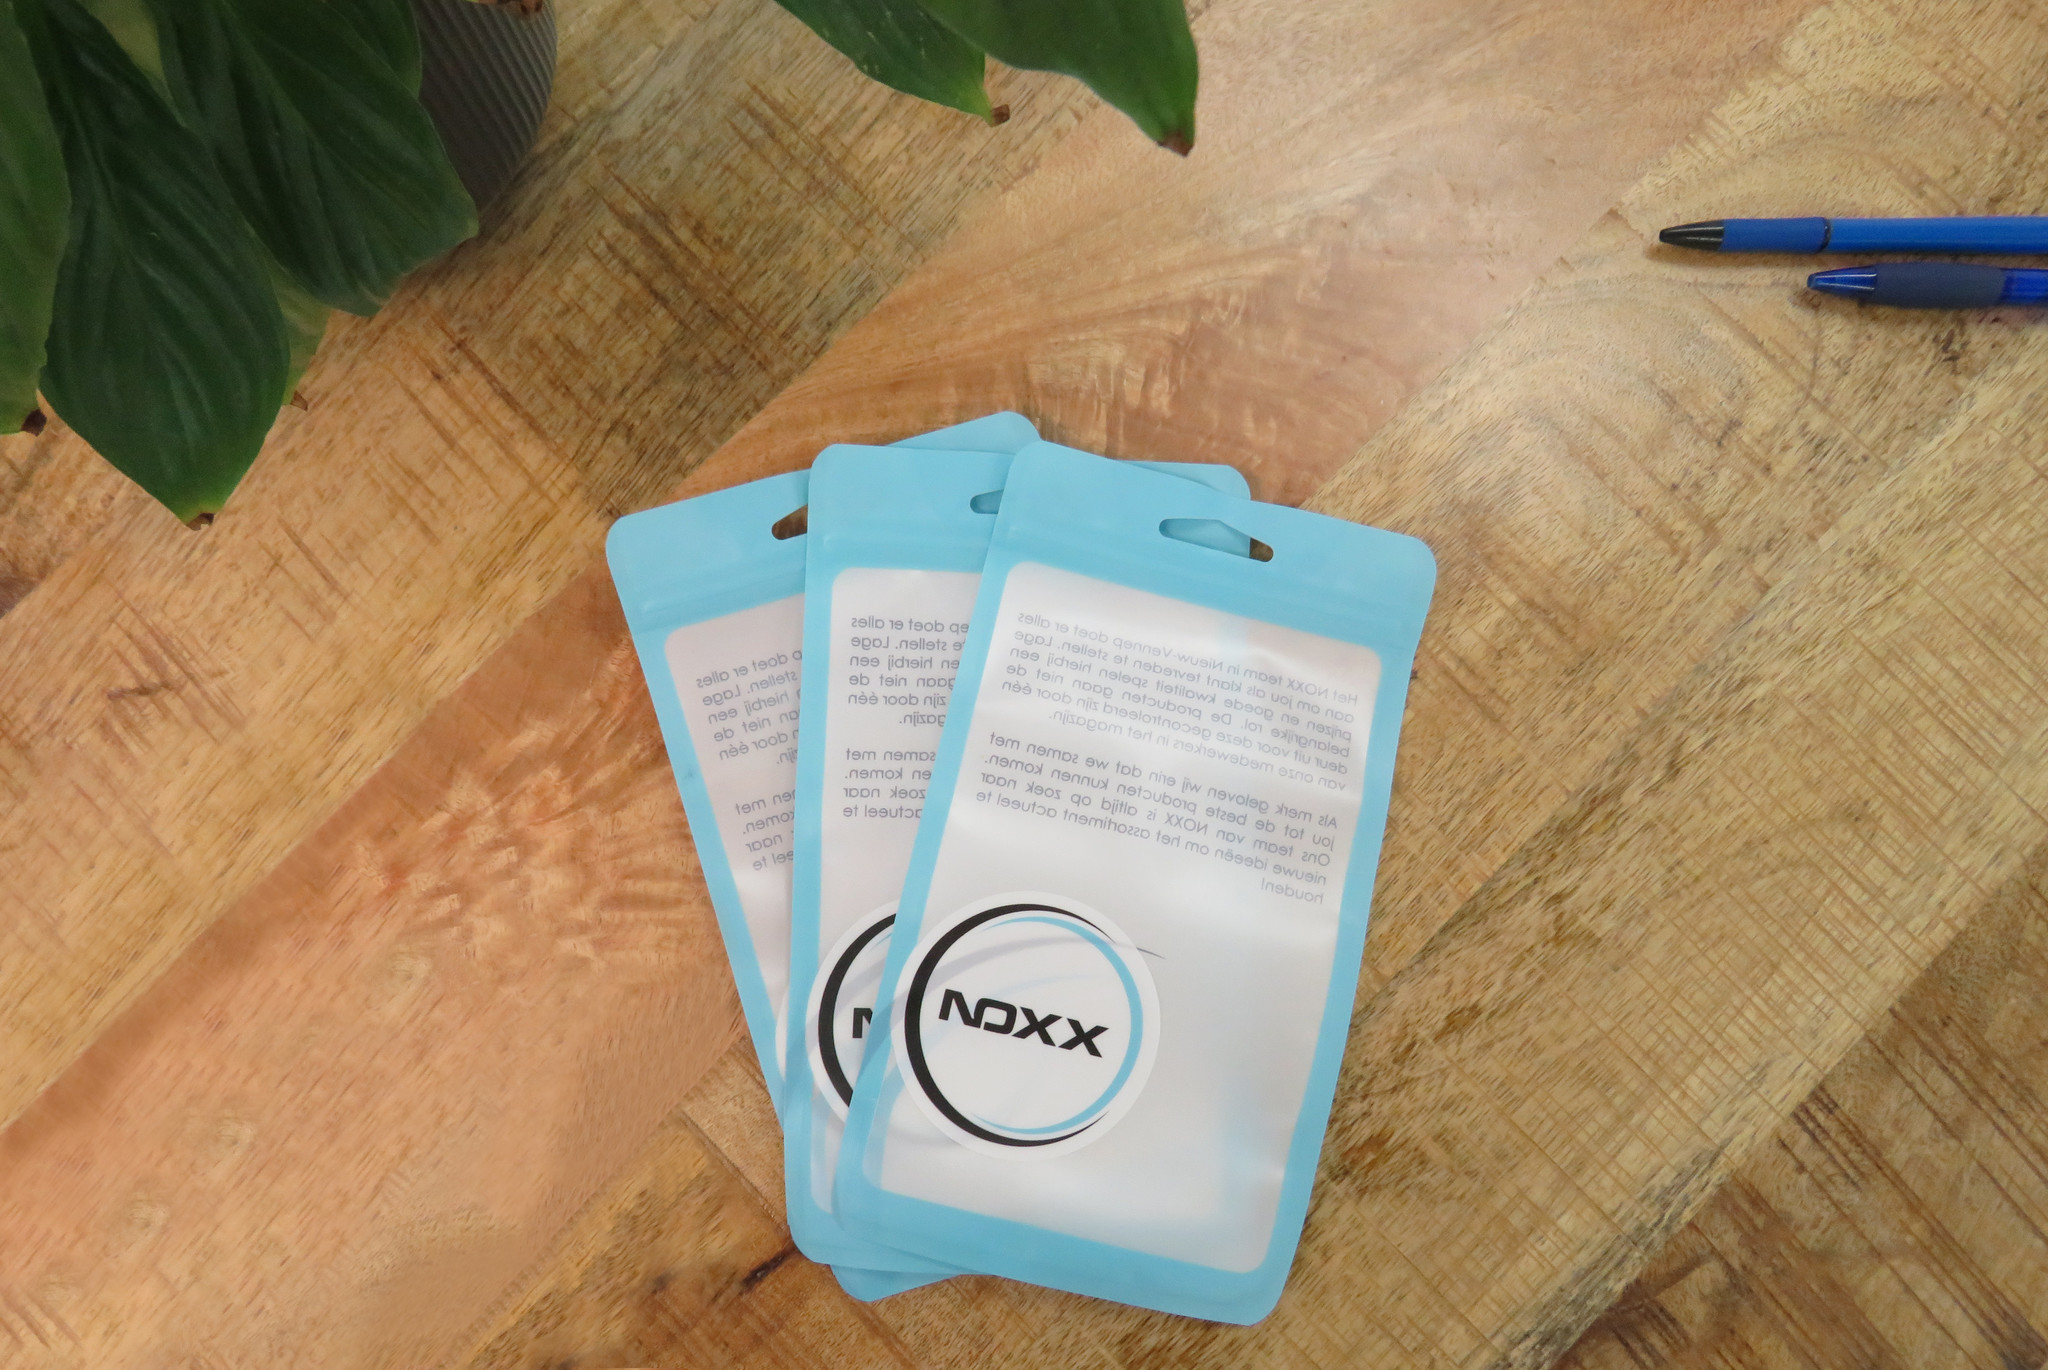 NoXx Hoes Geschikt voor OPPO A57s Hoesje Book Case Hoes Flip Cover Wallet Bookcase - Wit